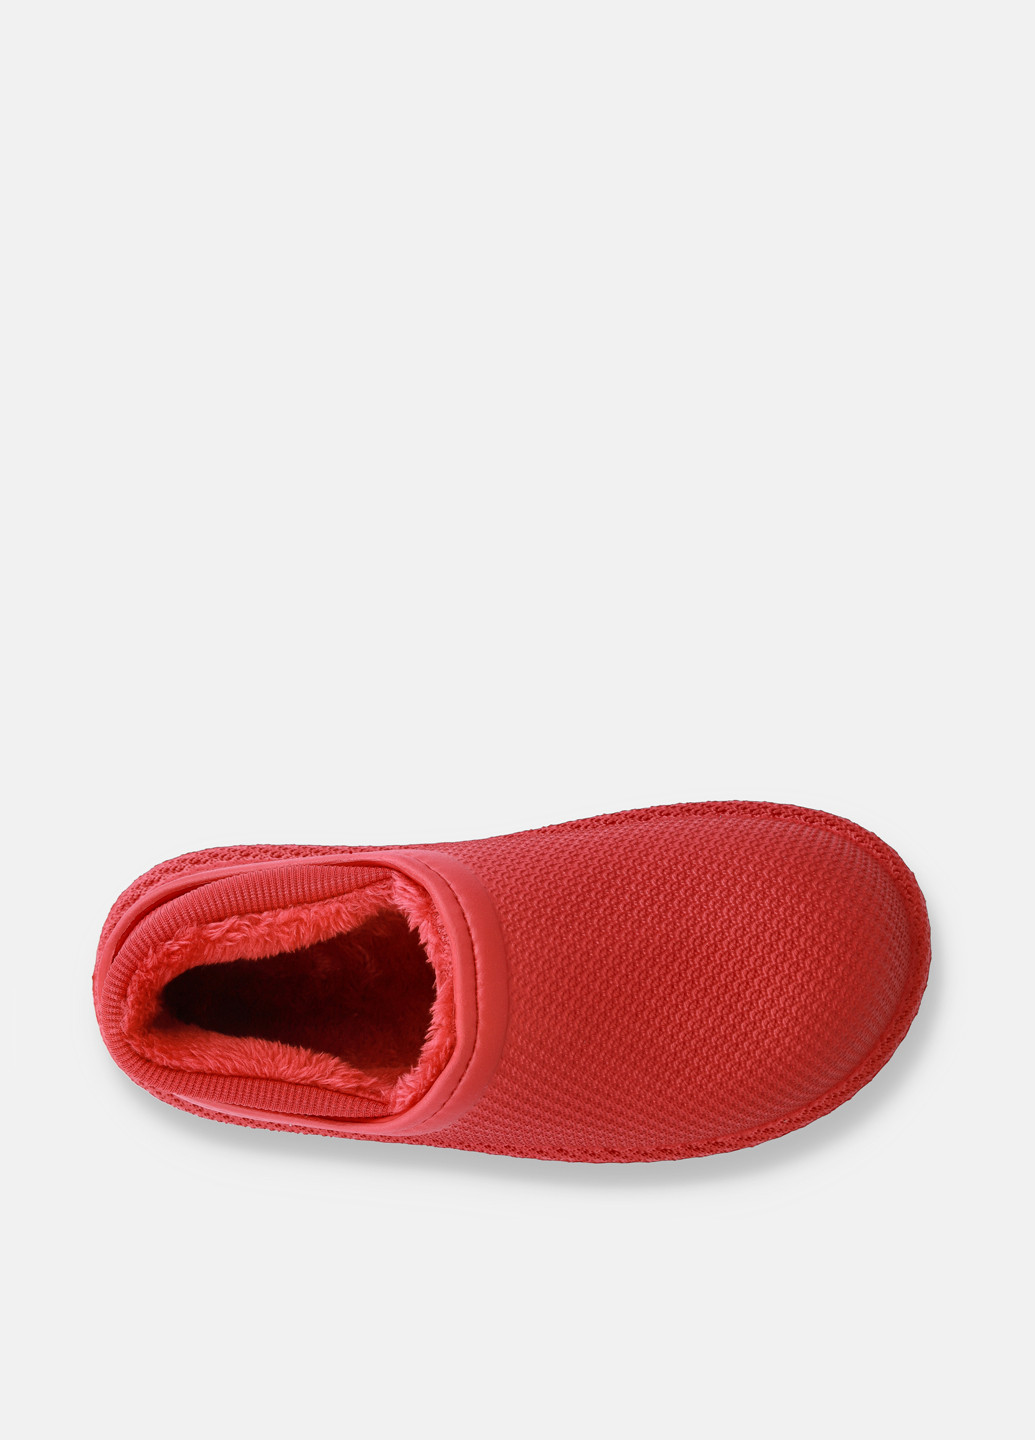 Терракотовые резиновые ботинки GaLosha